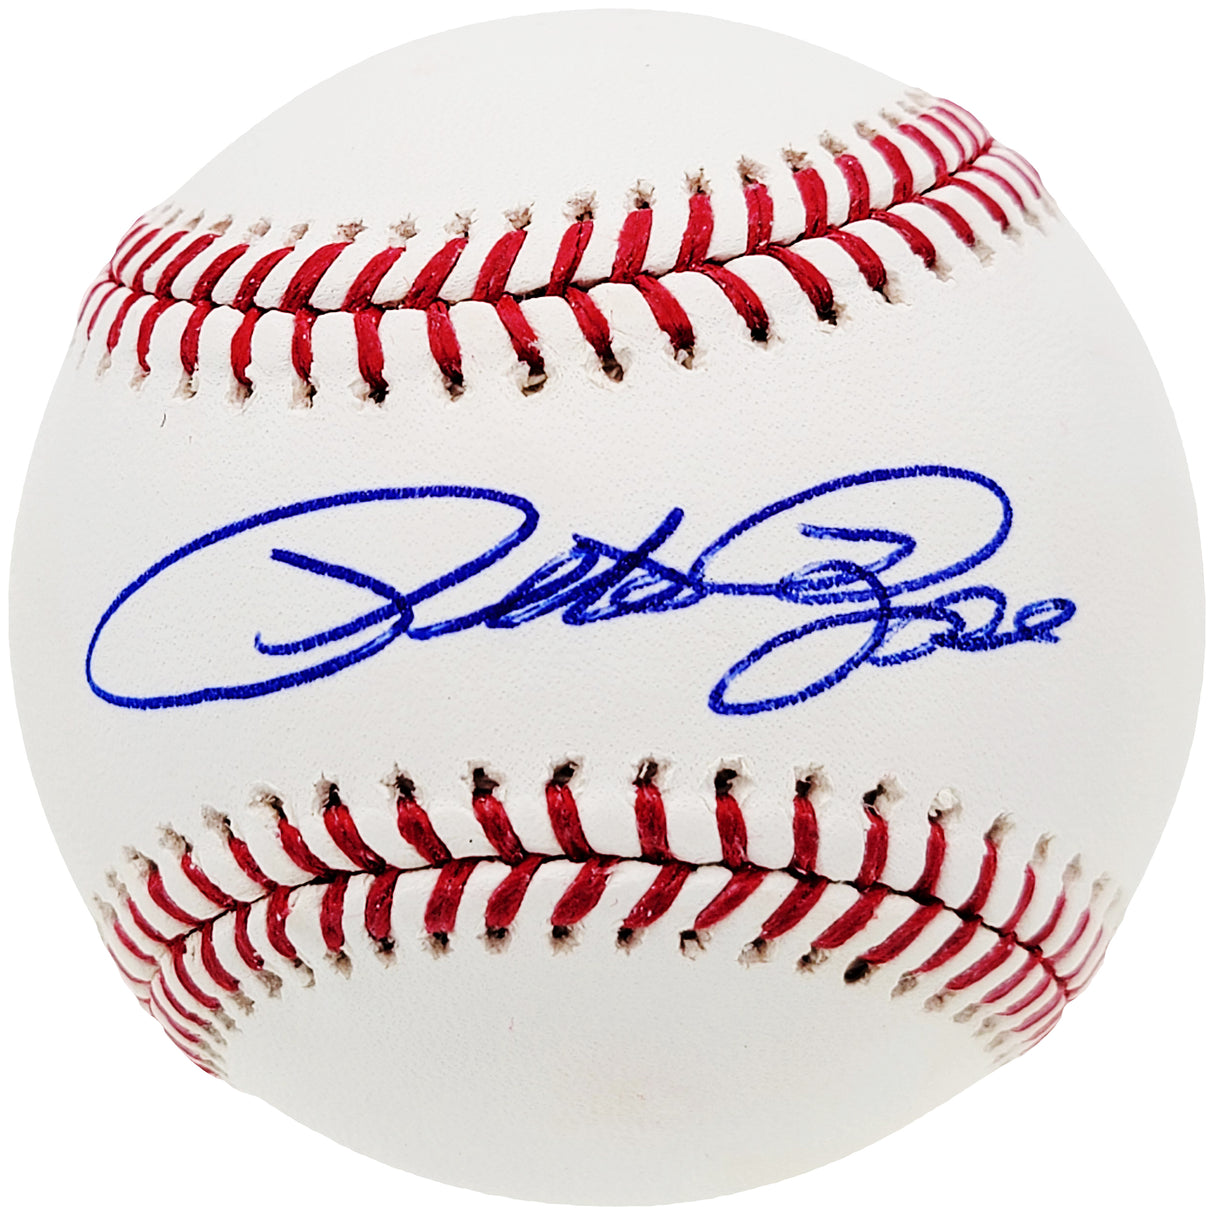 Pete Rose Autographed Official MLB Baseball Cincinnati Reds Beckett BAS Stock #159217